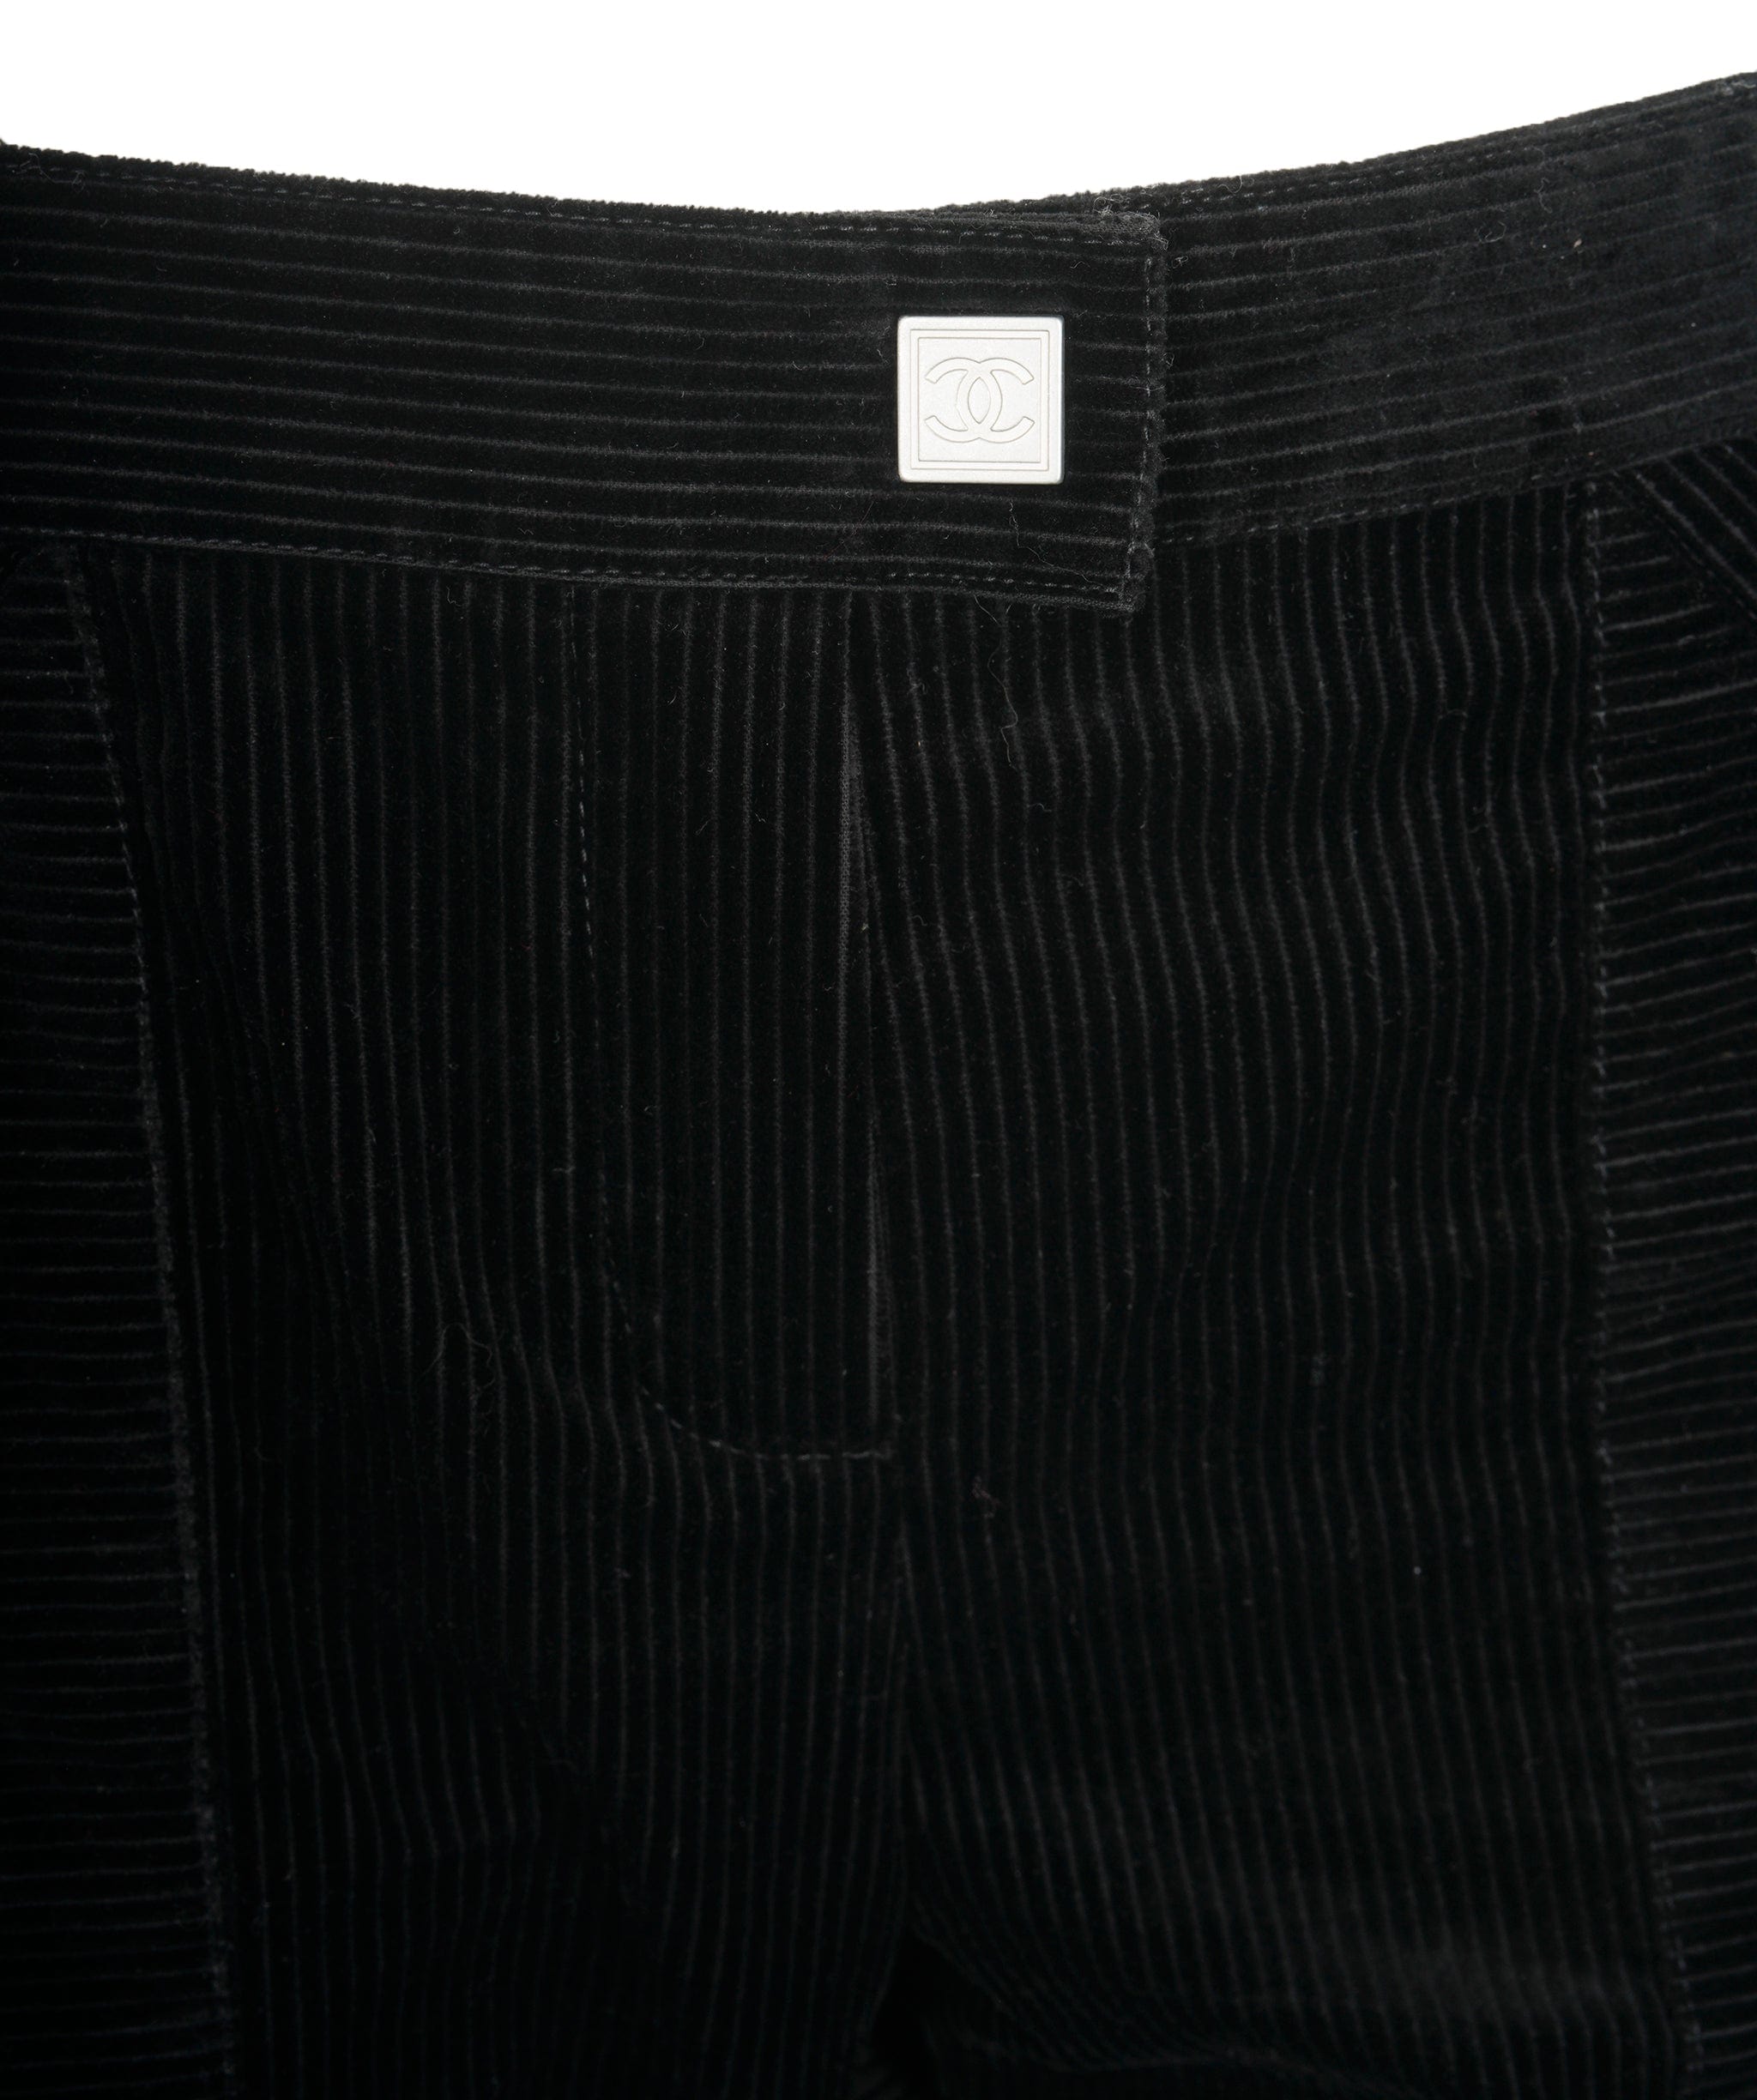 Chanel Chanel 03A Corduroy Pants Black ASL9201